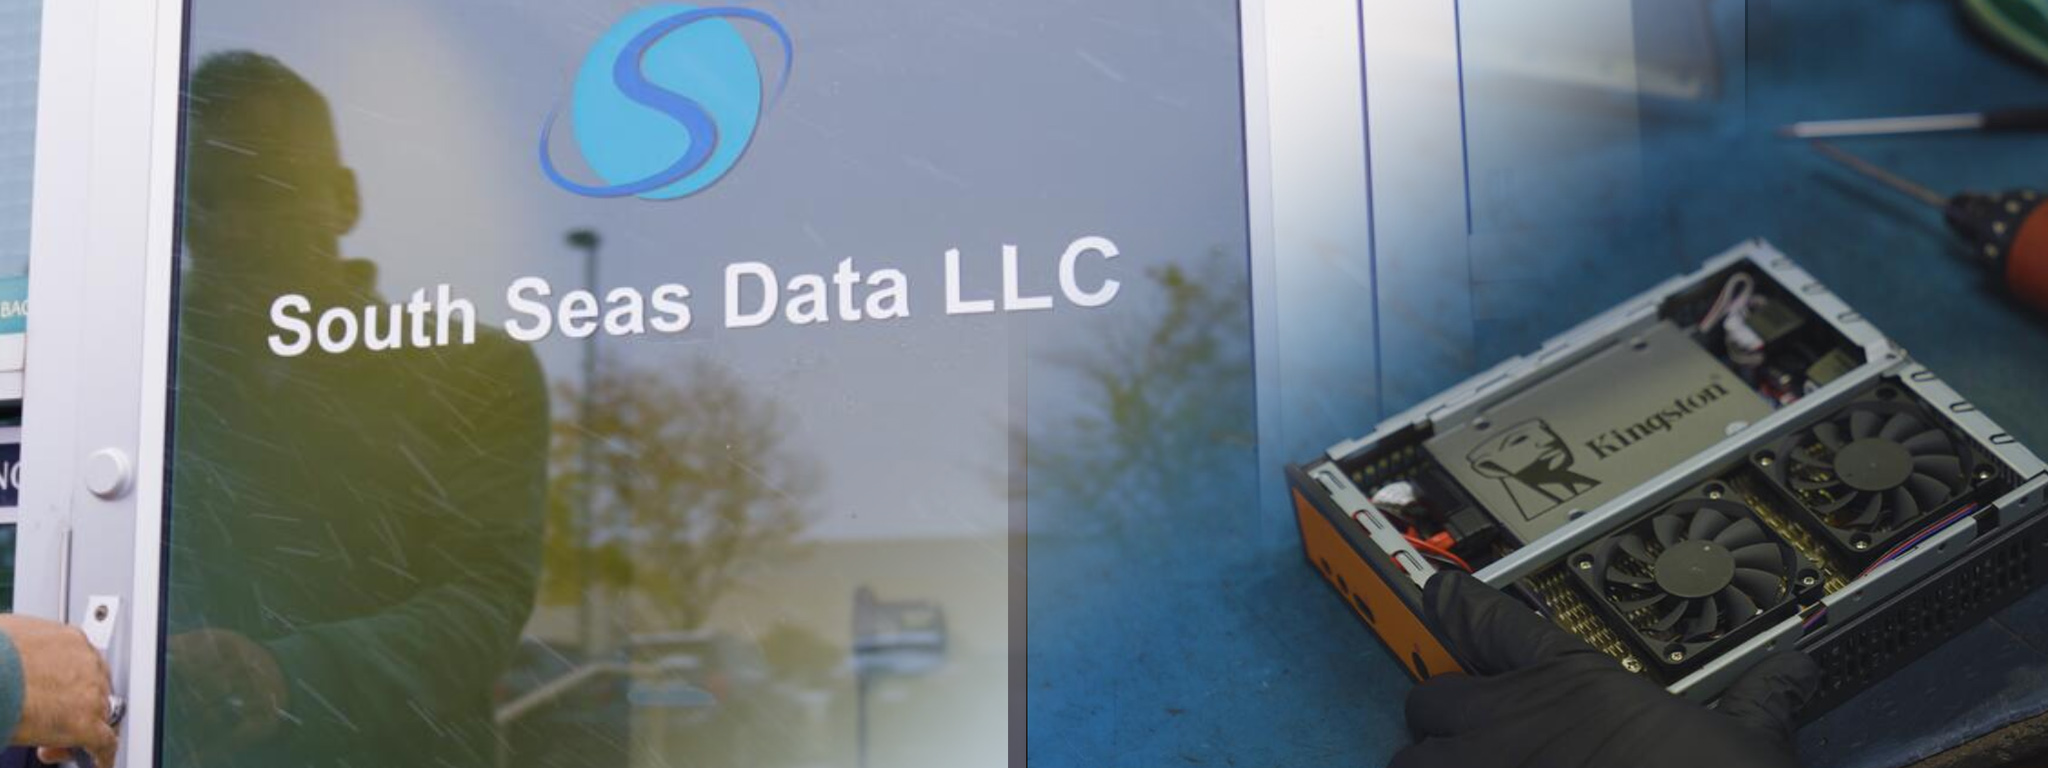 Входная дверь штаб-квартиры South Seas Data LLC и наложенное изображение системы с твердотельным накопителем Kingston.